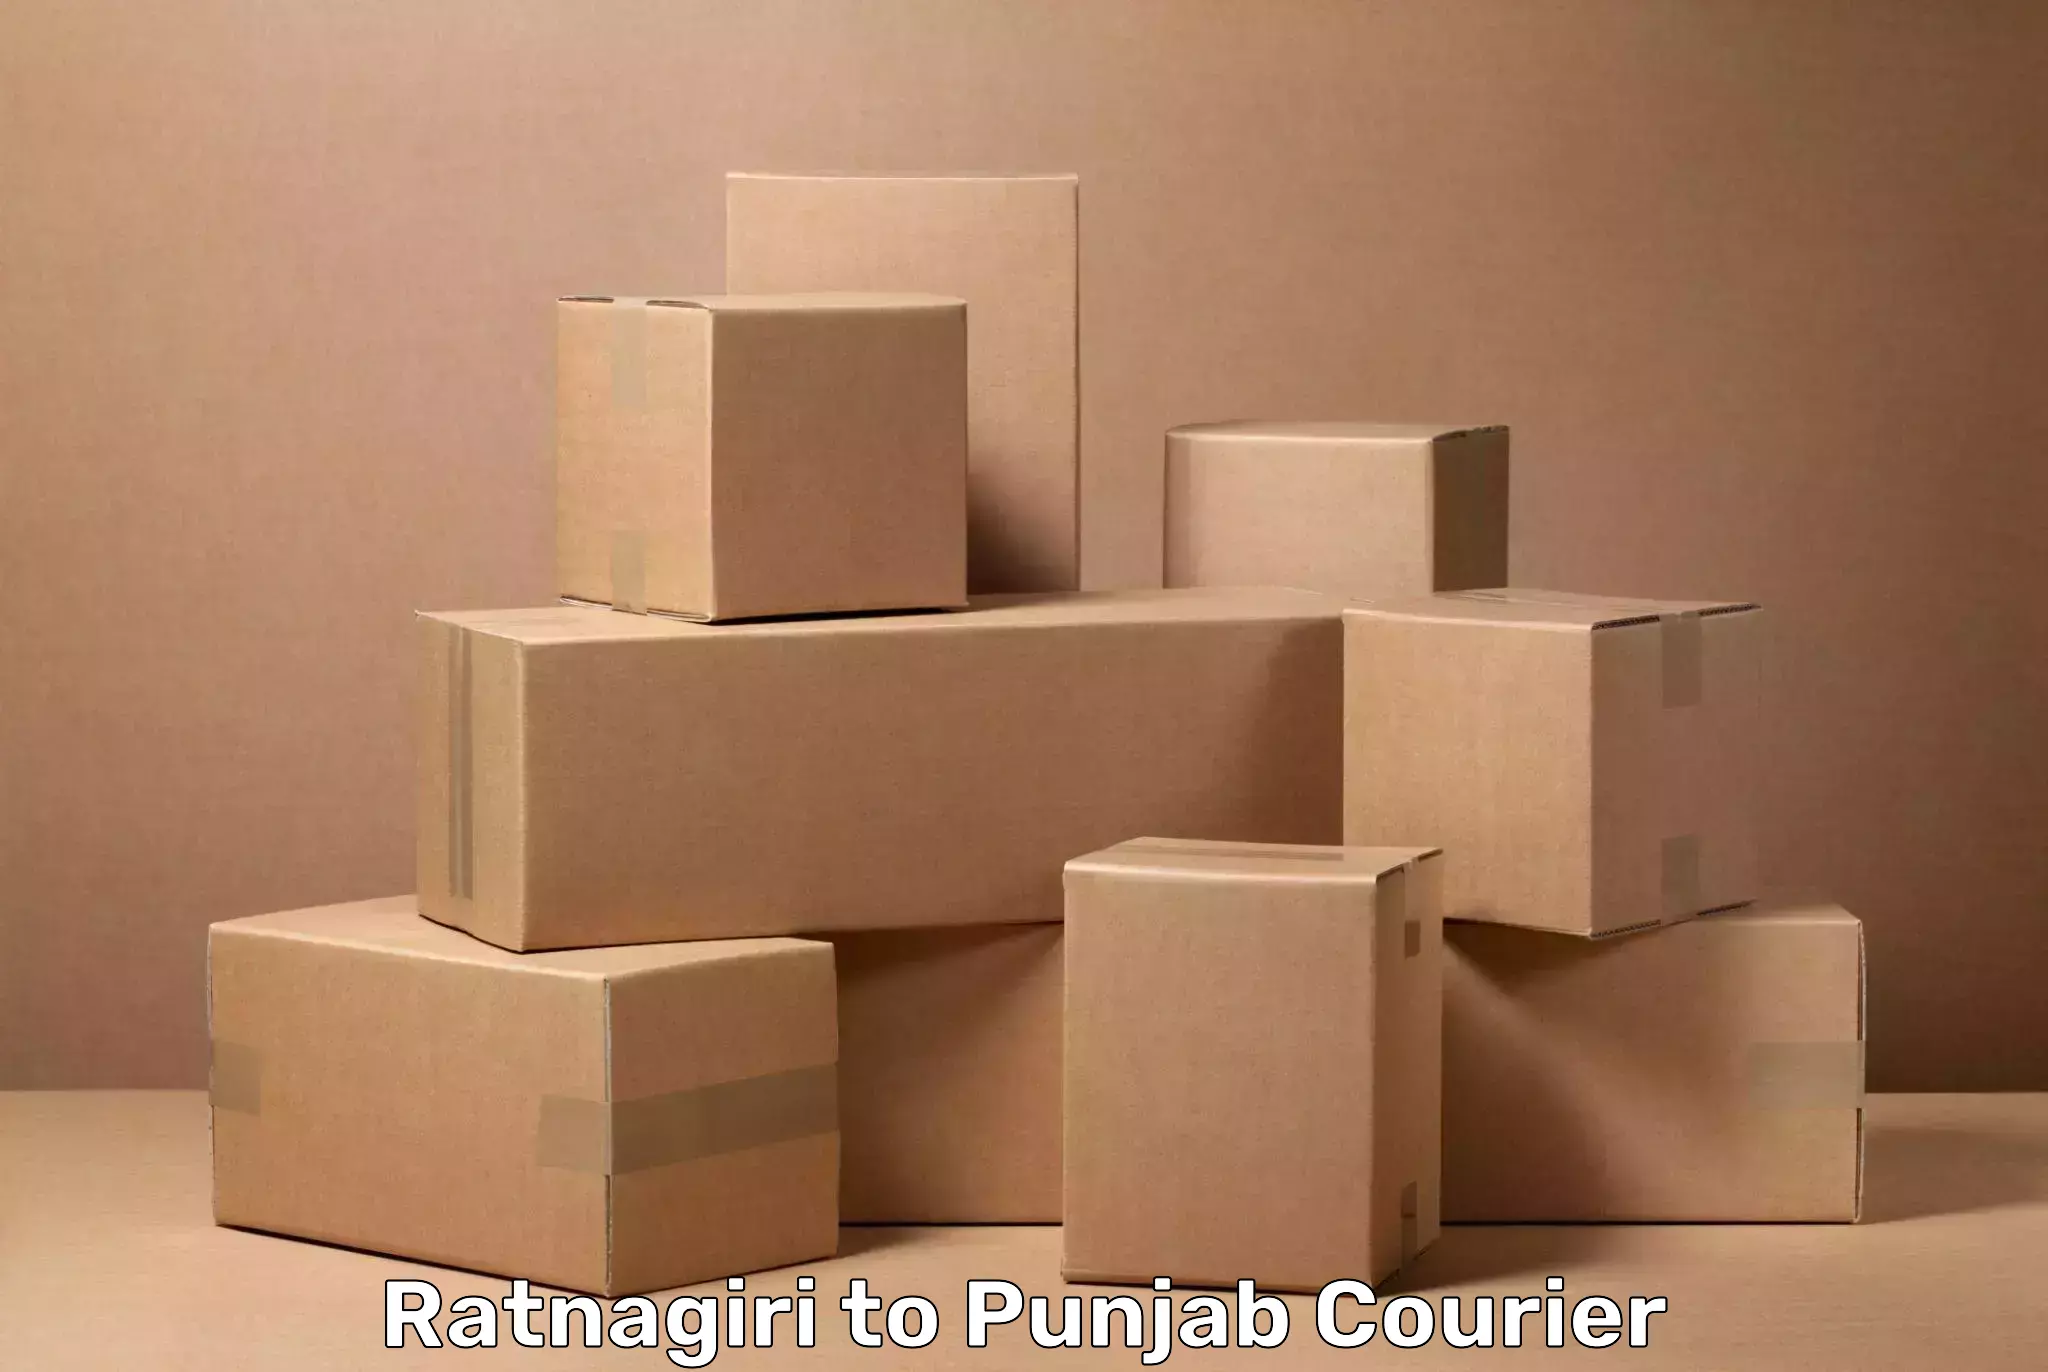 Luggage delivery estimate Ratnagiri to IIT Ropar